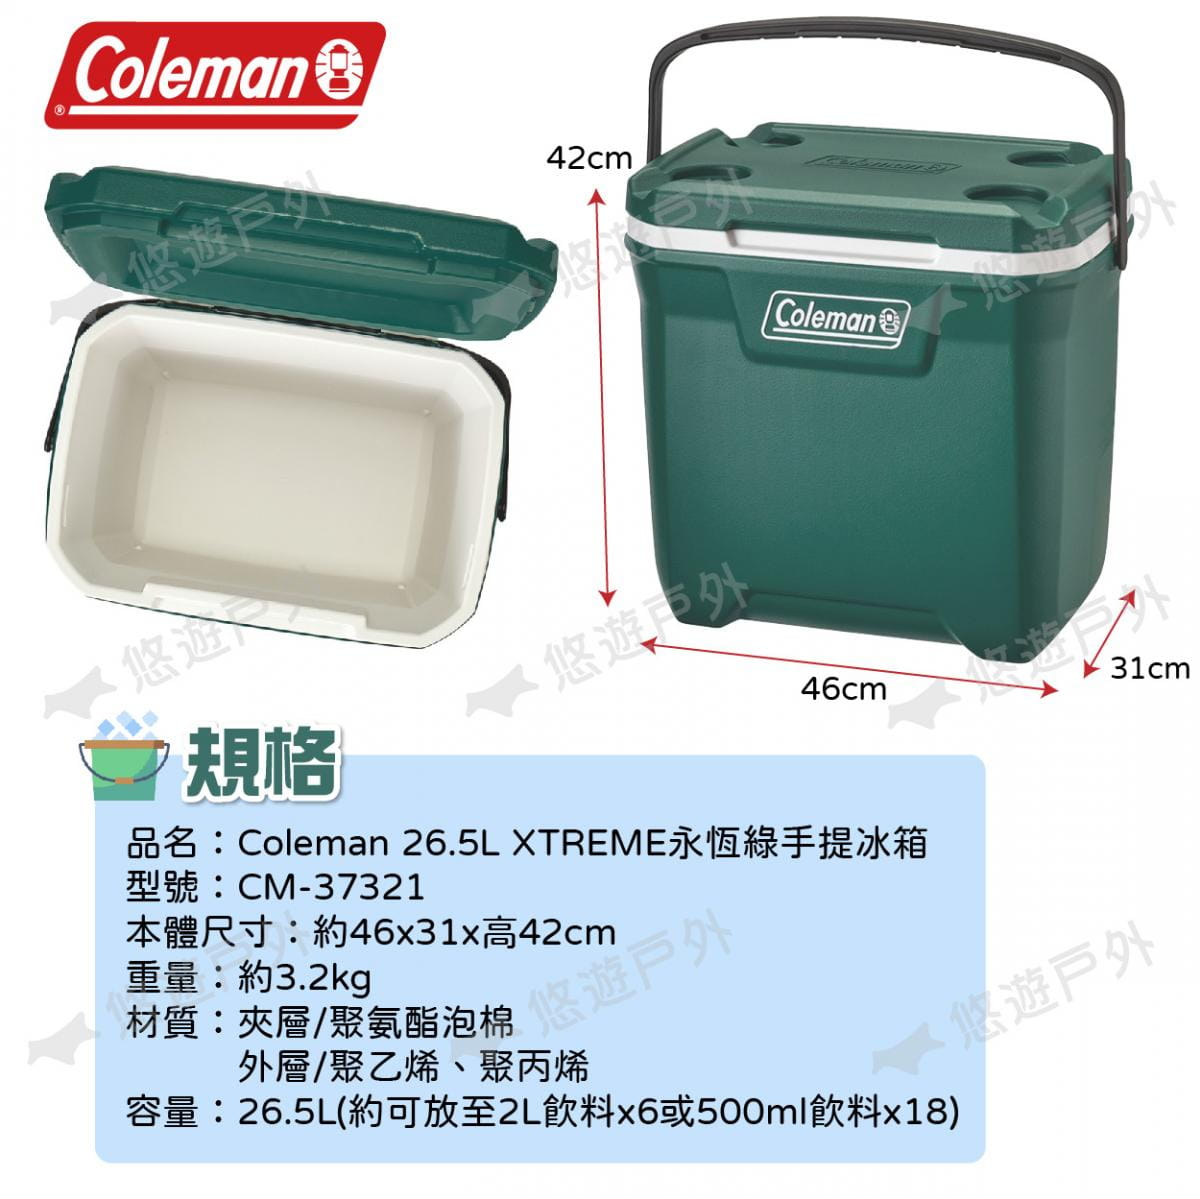 【Coleman】26.5L XTREME永恆綠手提冰箱 CM-37321 悠遊戶外 7